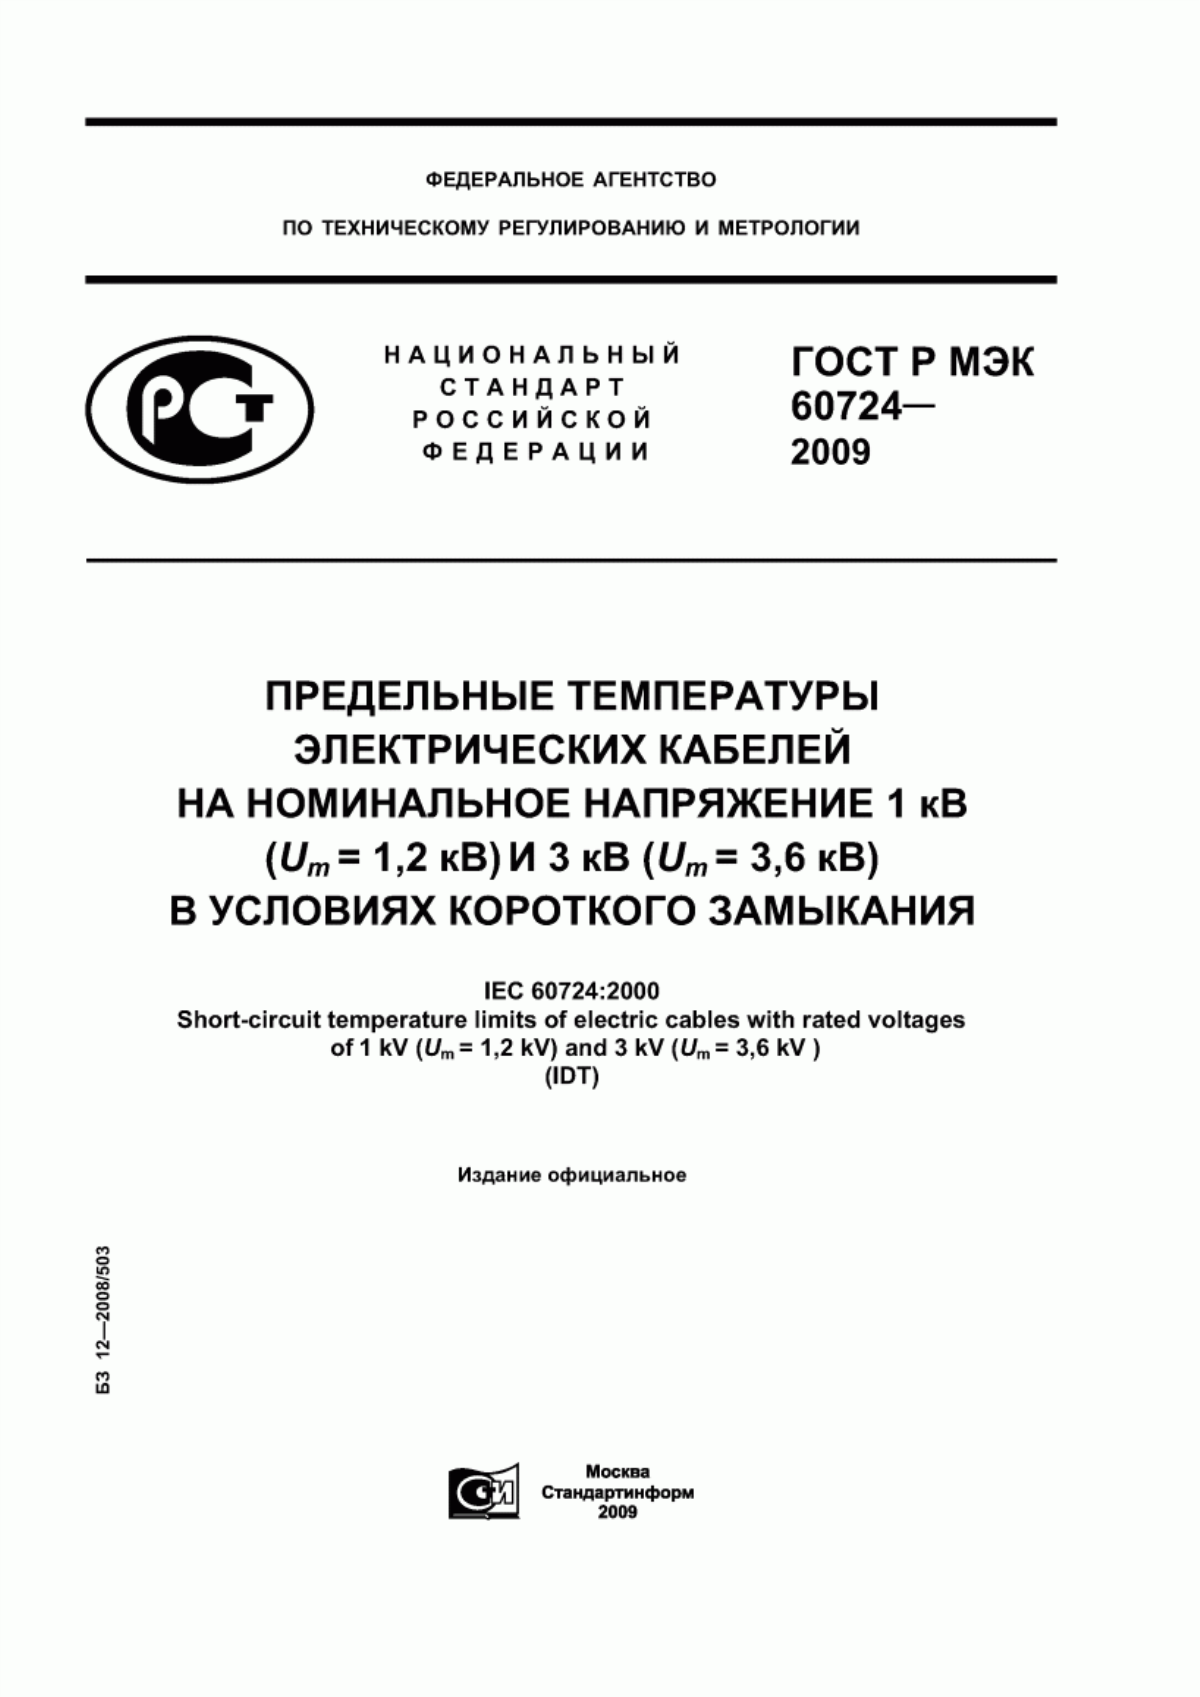 ГОСТ Р МЭК 60724-2009 Предельные температуры электрических кабелей на номинальное напряжение 1 кВ (Um = 1,2 кВ) и 3 кВ (Um = 3,6 кВ) условиях короткого замыкания